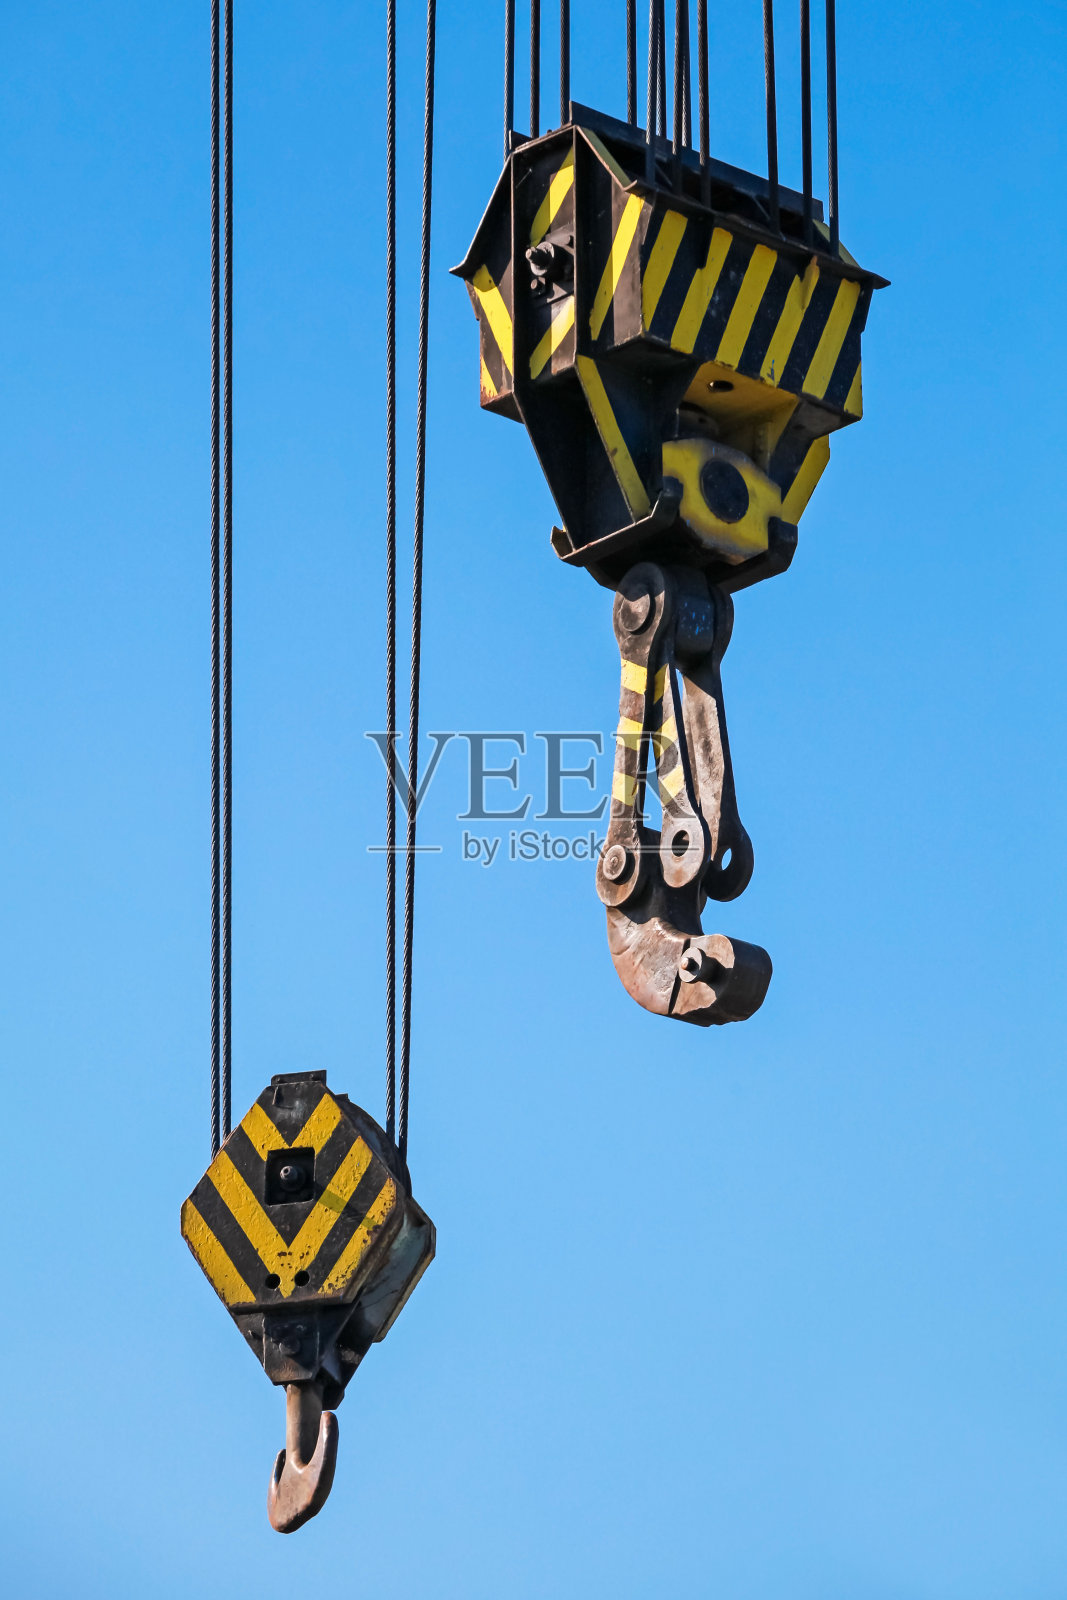 大型港口起重机的吊钩挂在钢缆上照片摄影图片